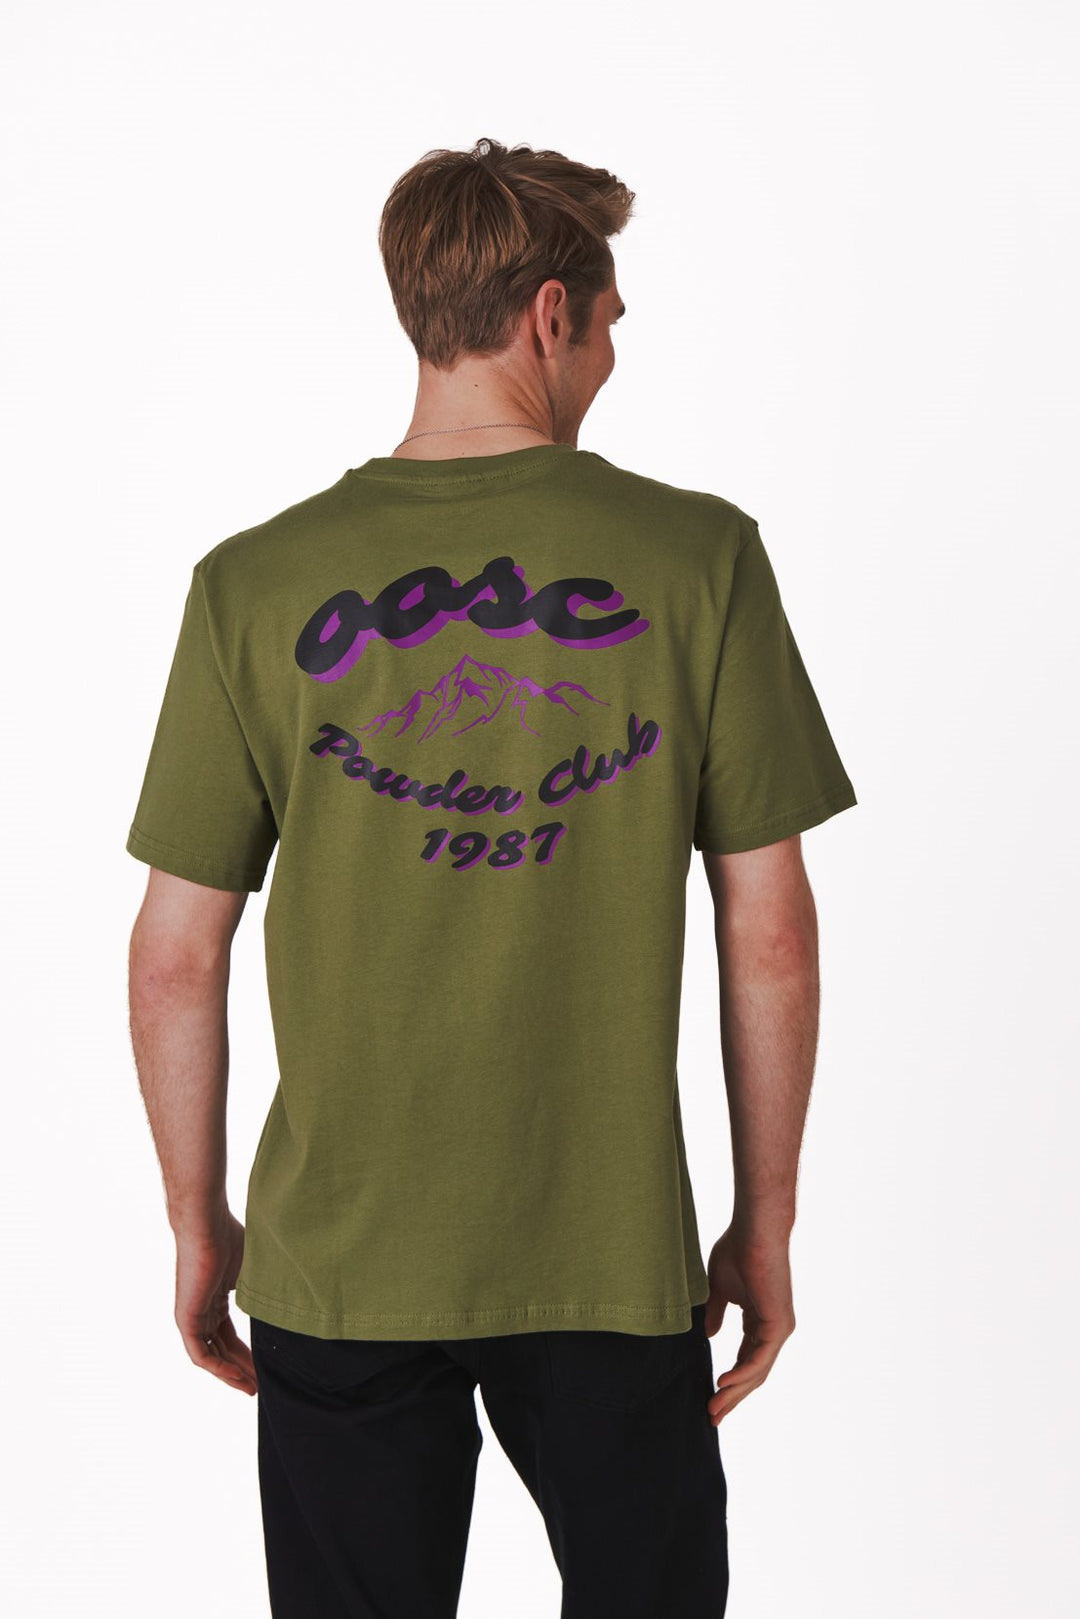 Powder Club T-Shirt